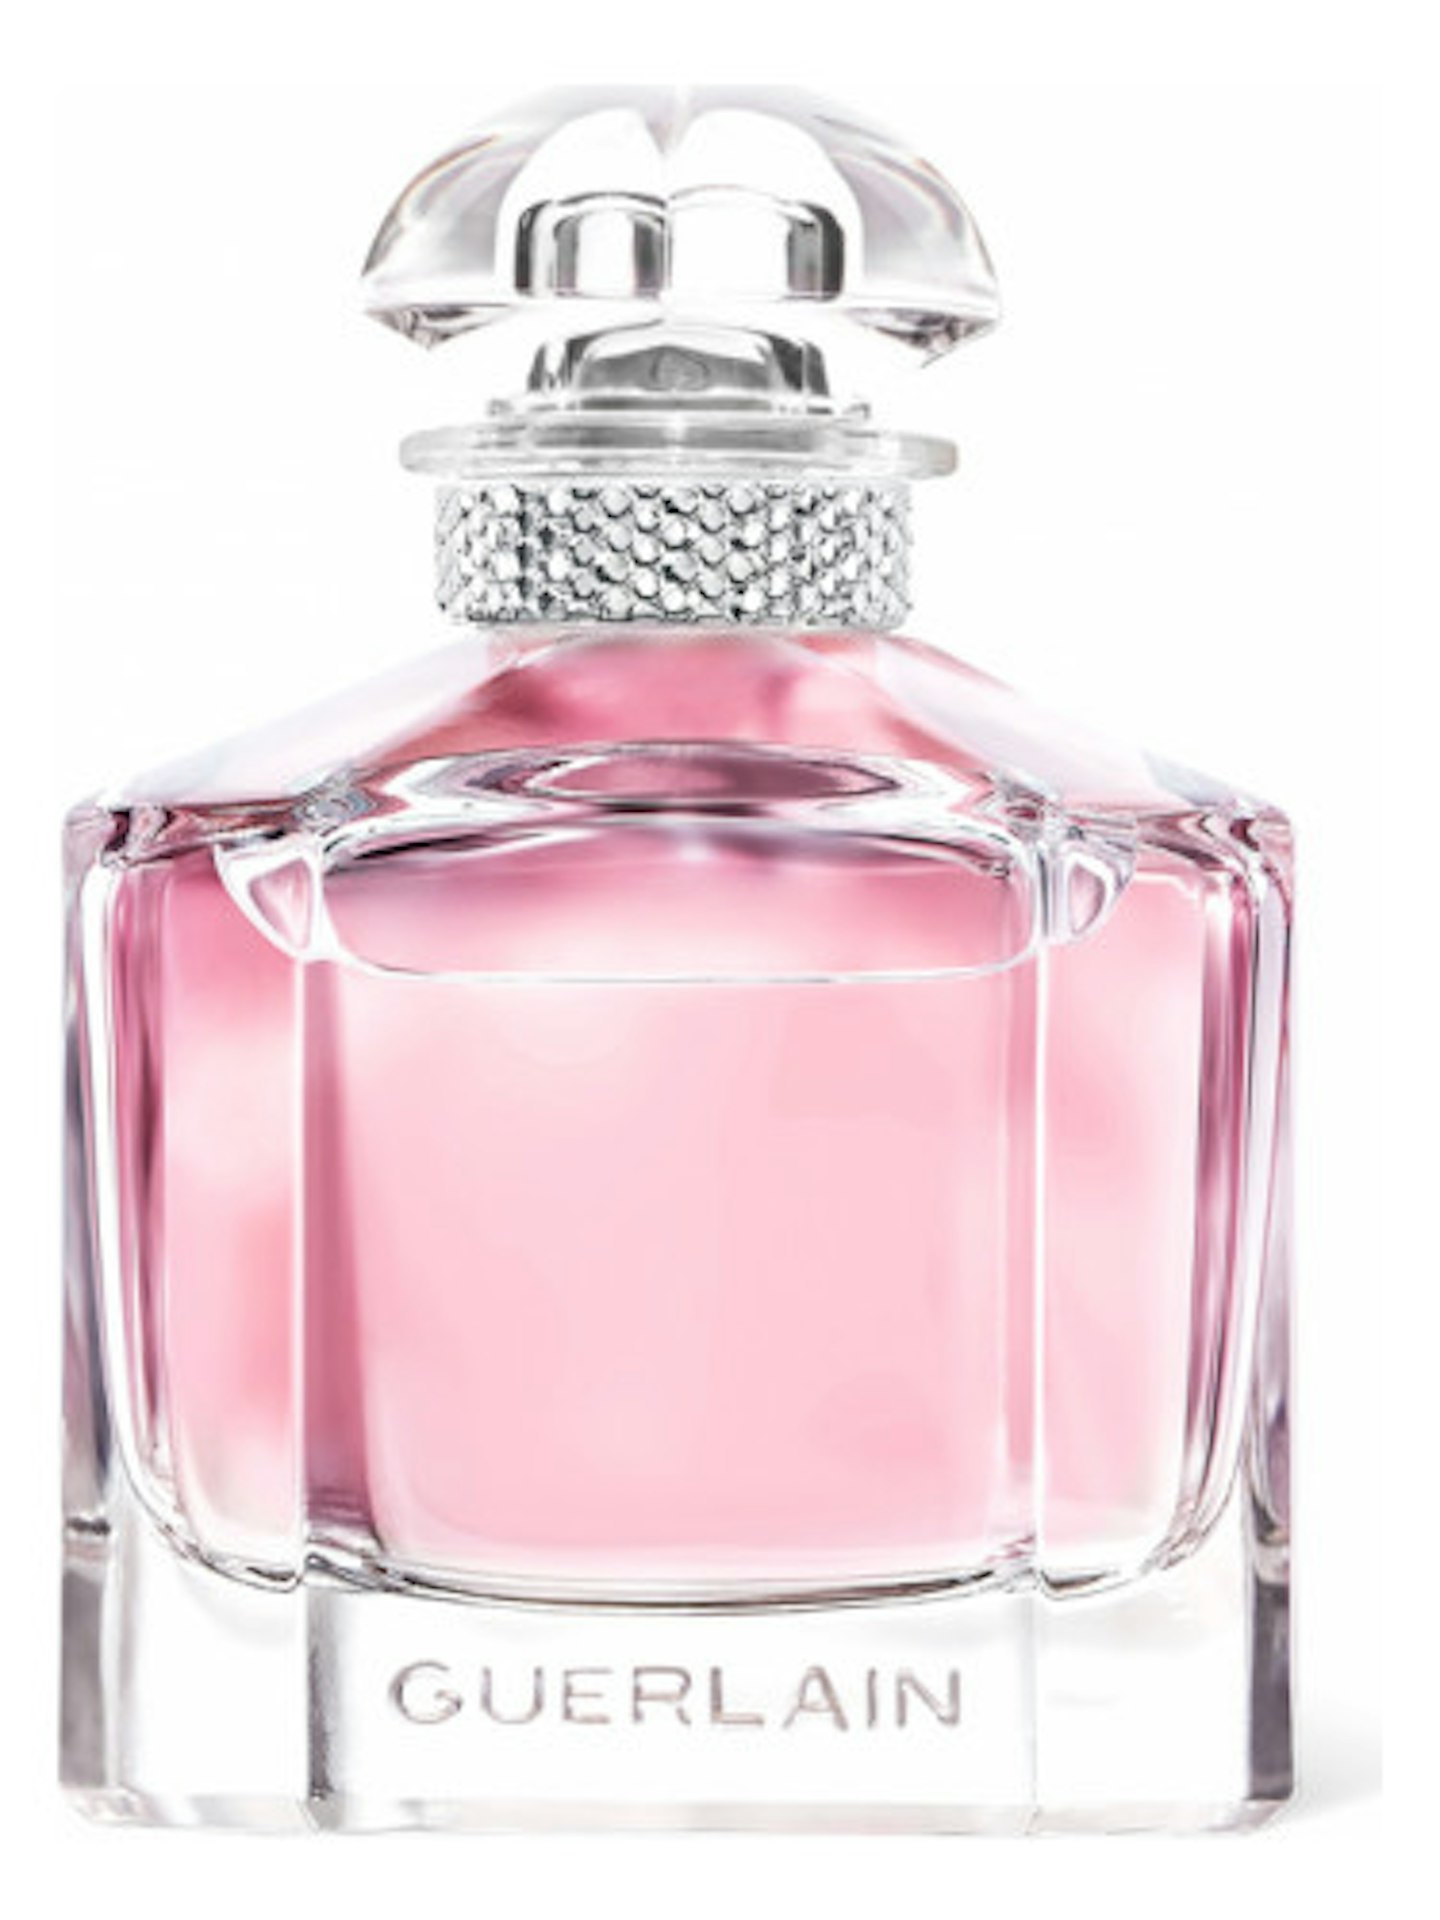 Best summer fragrance - Guerlain